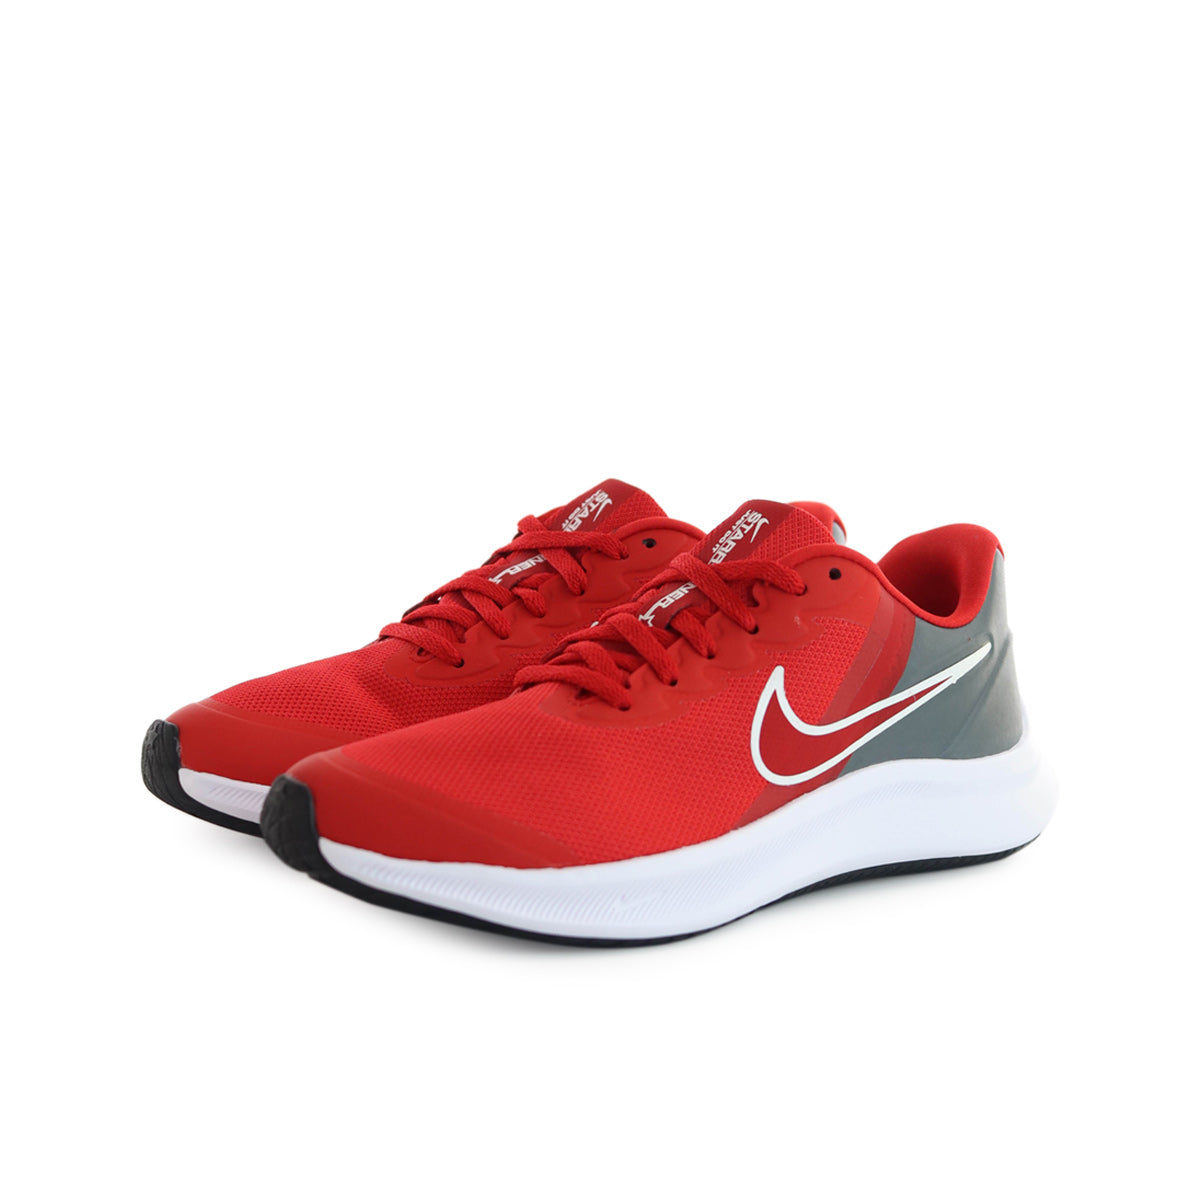 rot-weiss-grau x (GS) Nike Star Footwear – Fashion - DA2776-607 Brooklyn Runner 3